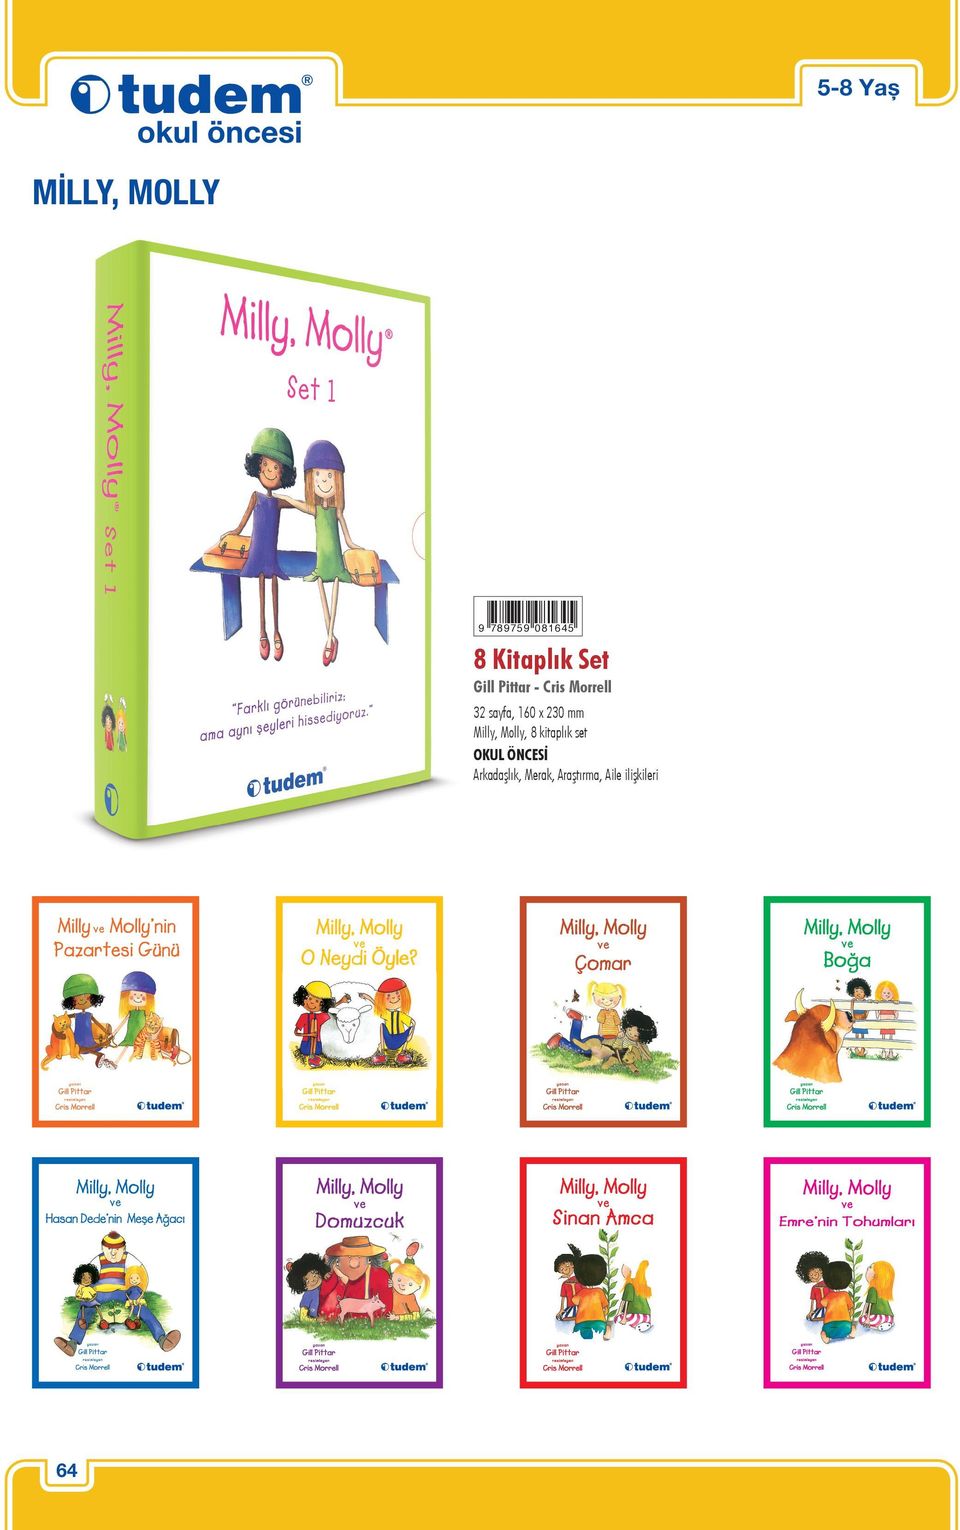 230 mm Milly, Molly, 8 kitaplık set OKUL ÖNCESİ